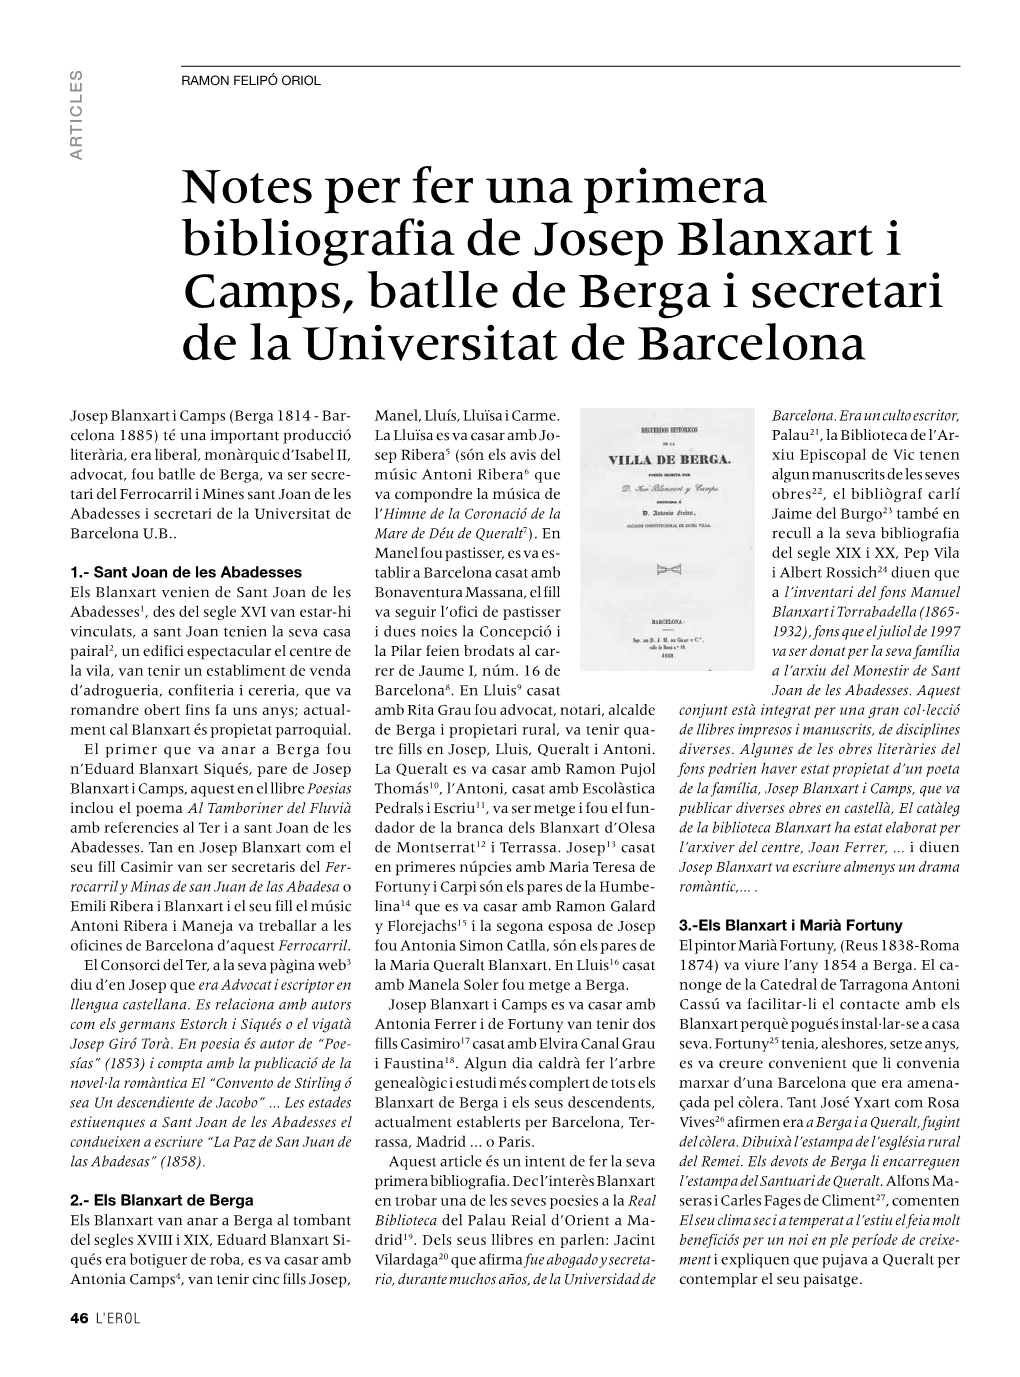 Notes Per Fer Una Primera Bibliografia De Josep Blanxart I Camps, Batlle De Berga I Secretari De La Universitat De Barcelona